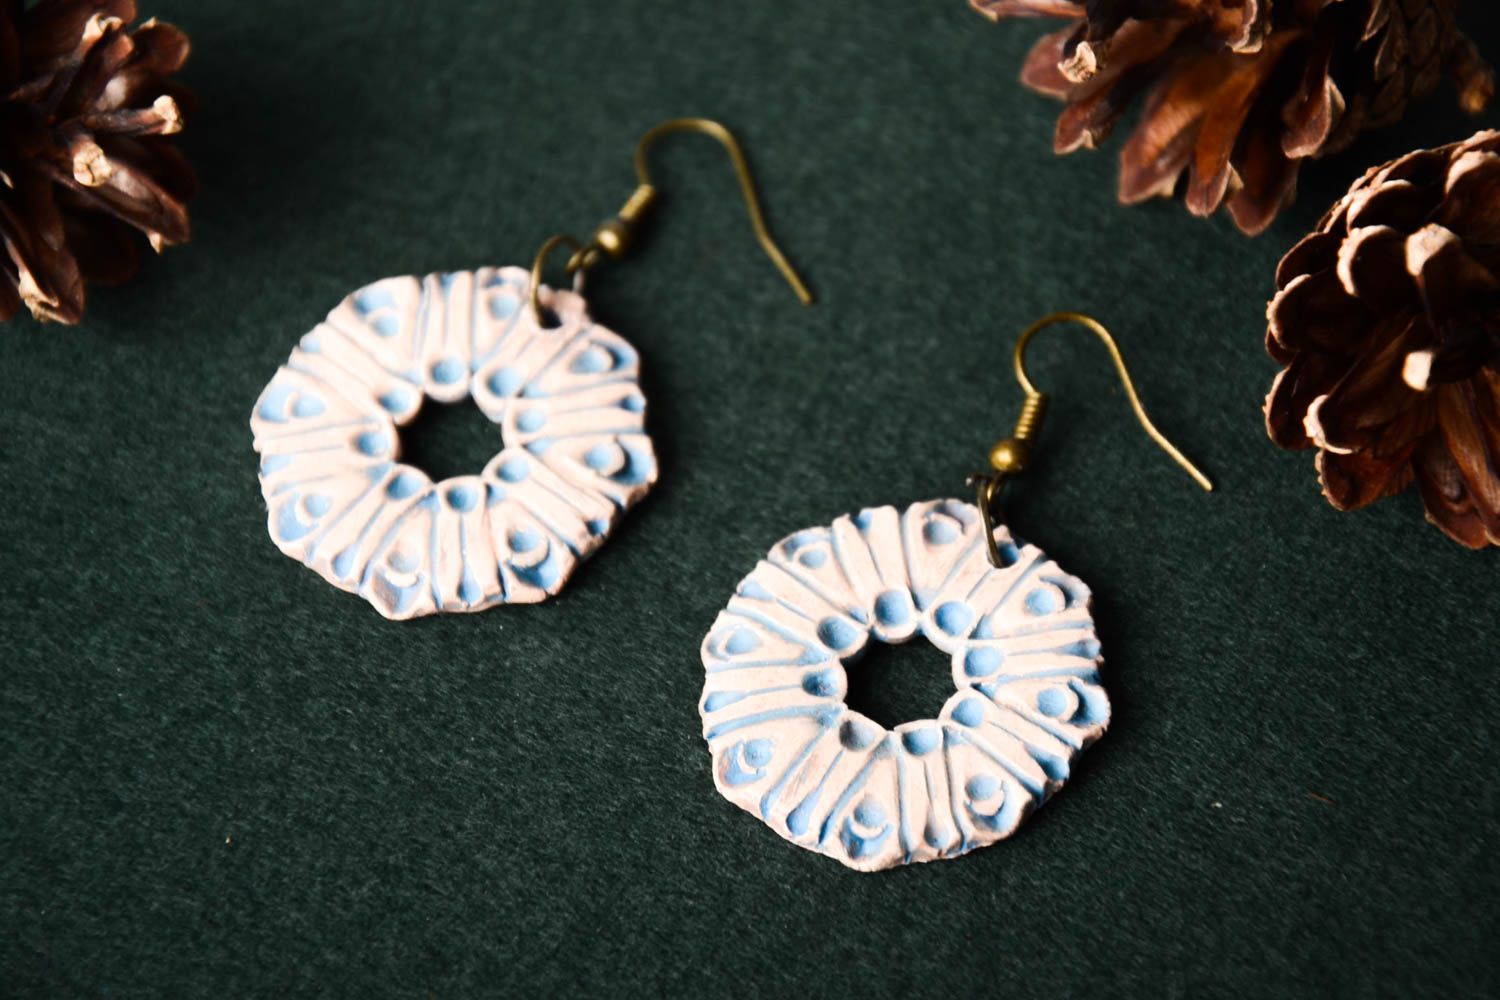 Handmade cute ceramic earrings beautiful designer earrings stylish jewelry photo 1